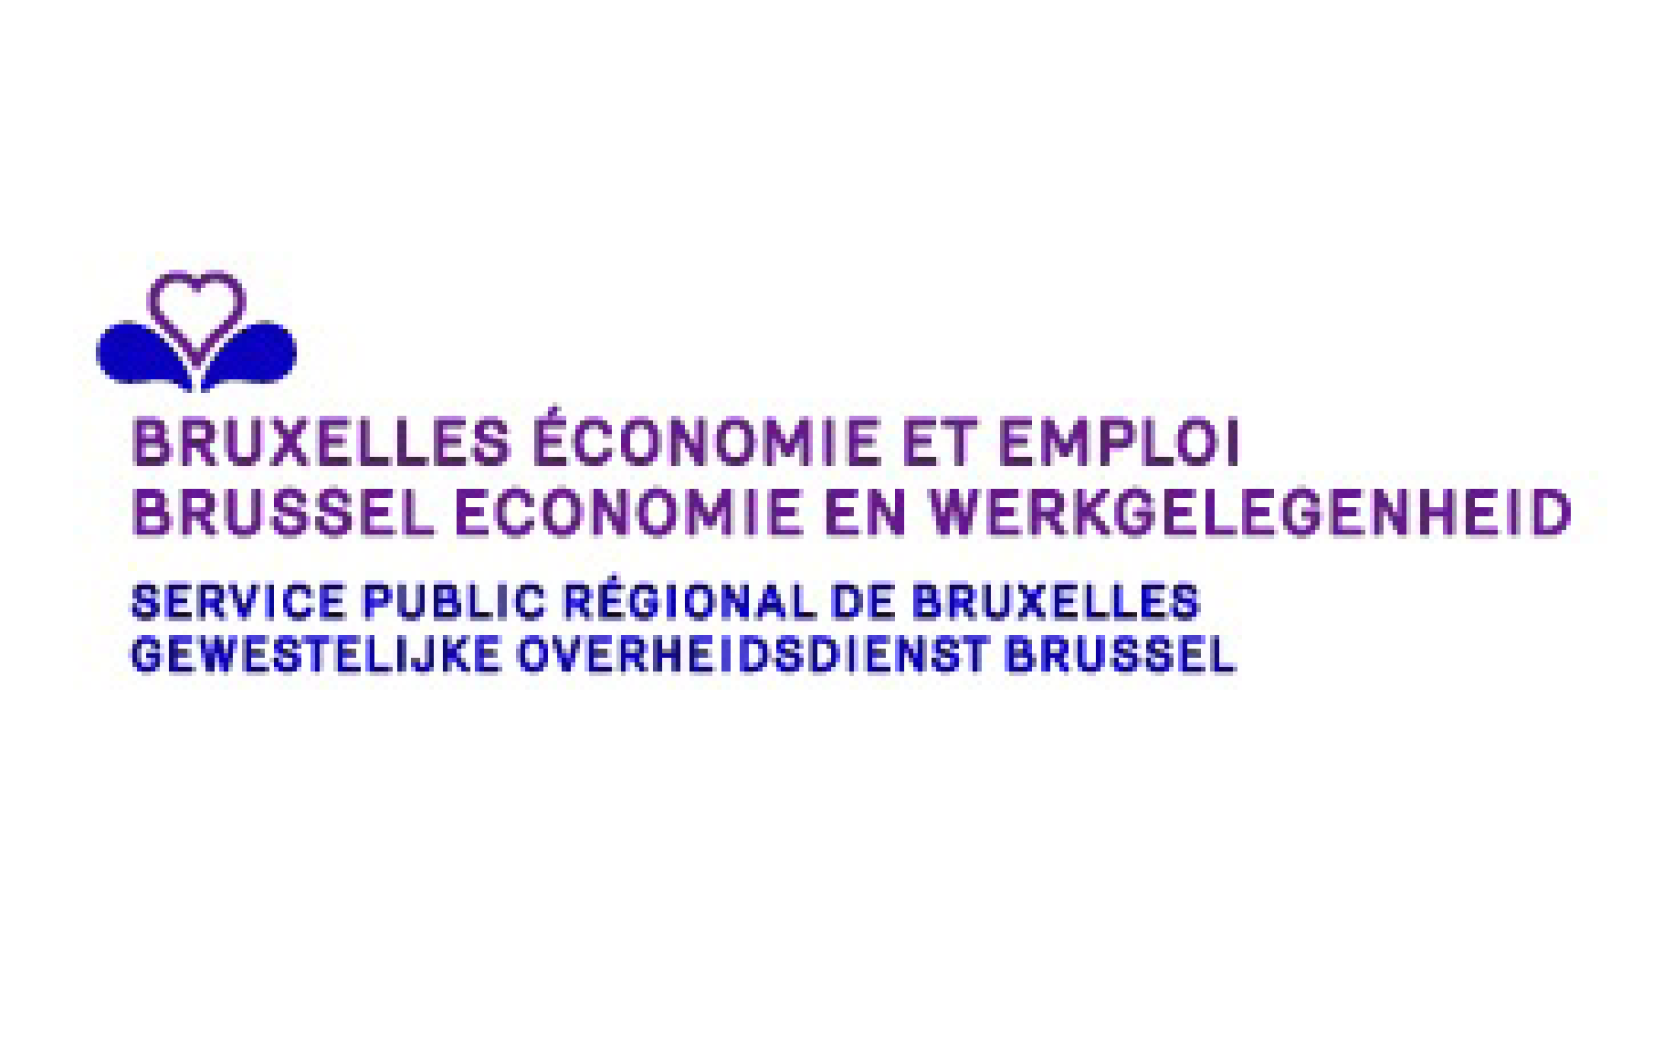 Bruxelles Economie et Emploi